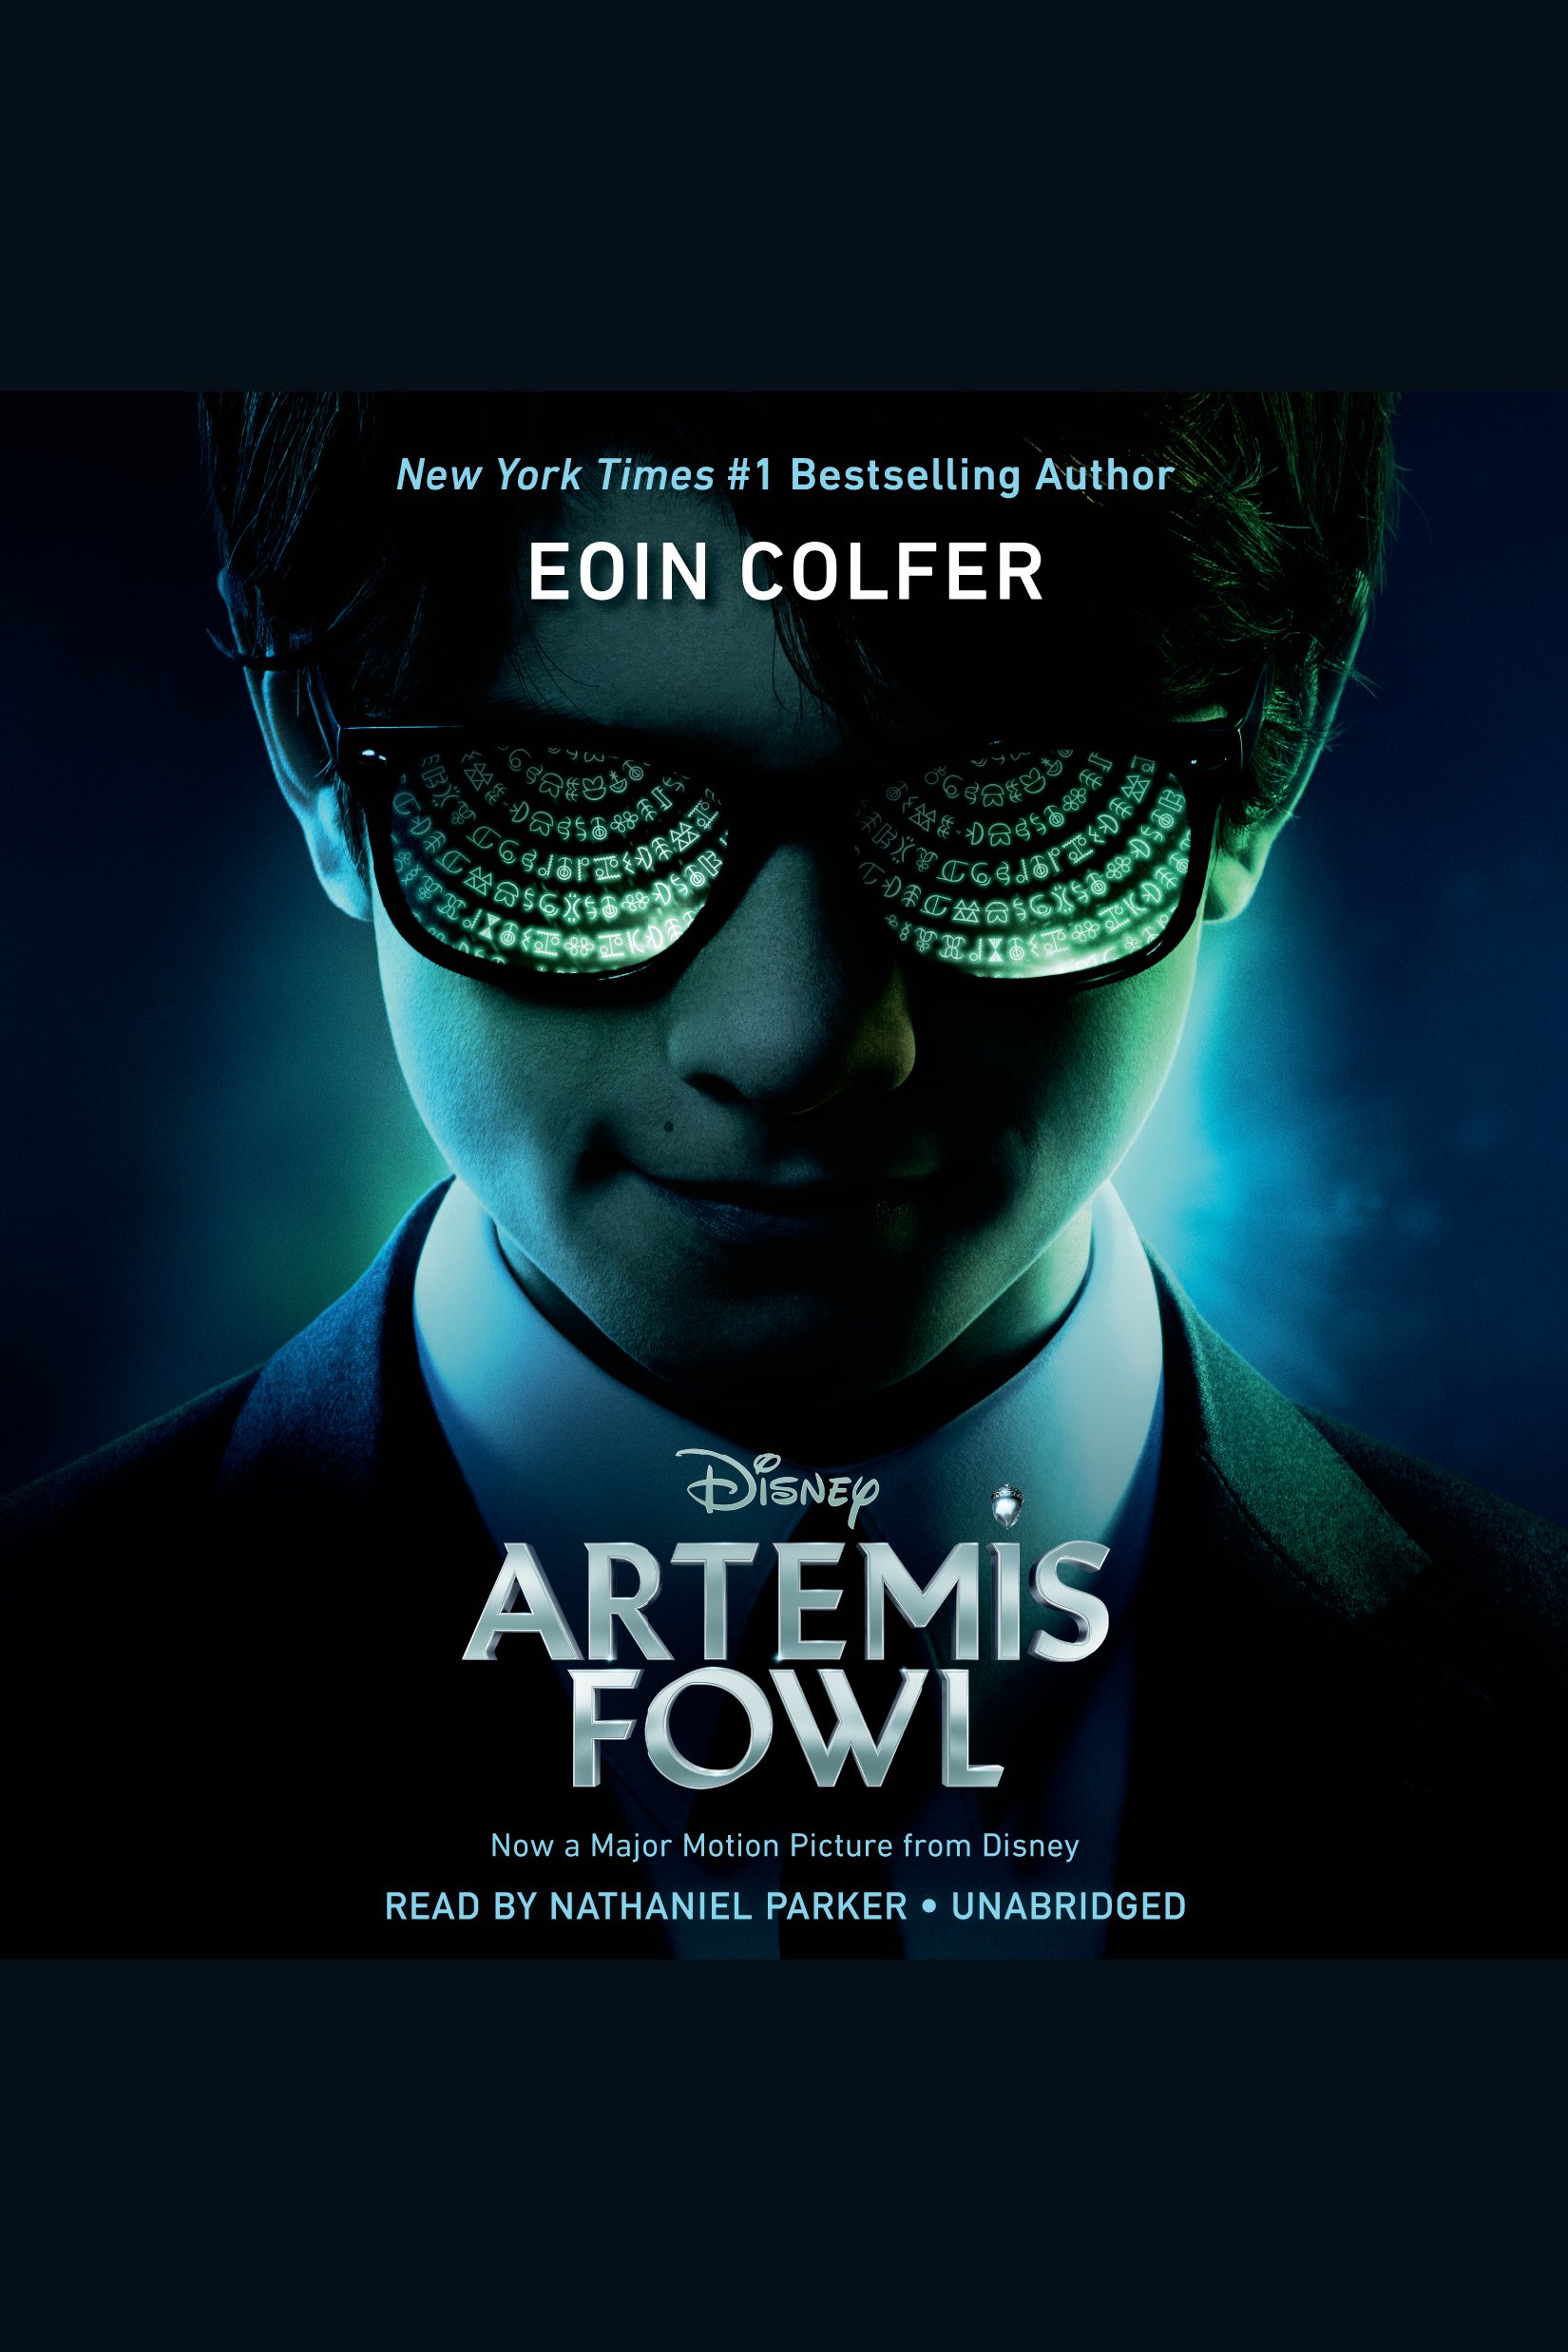 Artemis Fowl cover image